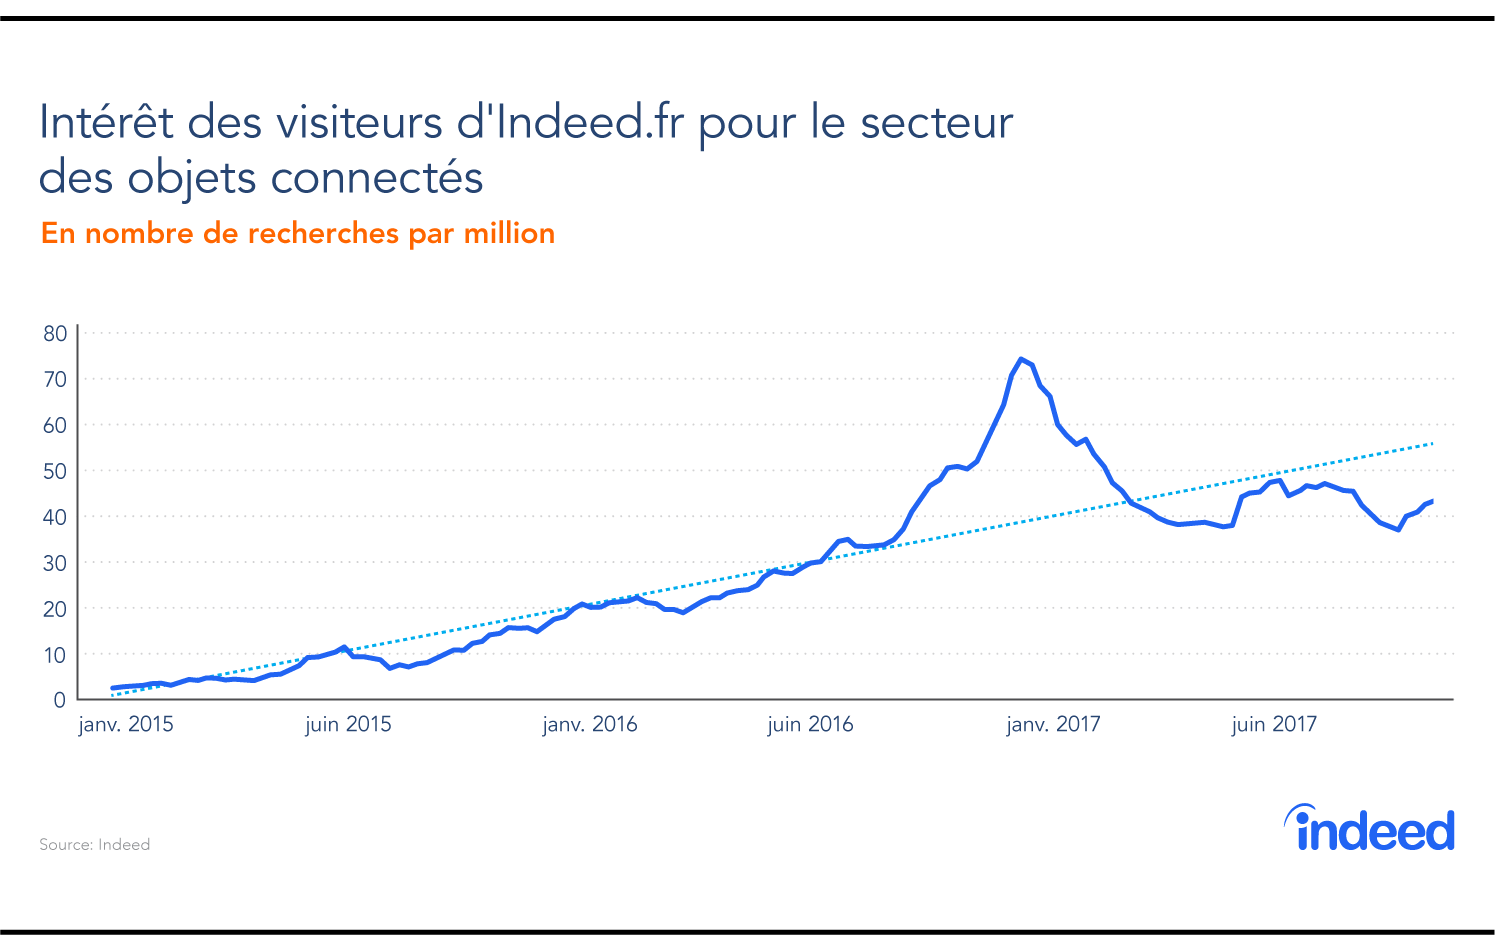 Intérêt des visiteurs d'Indeed.fr pour le secteur des objets connectés.